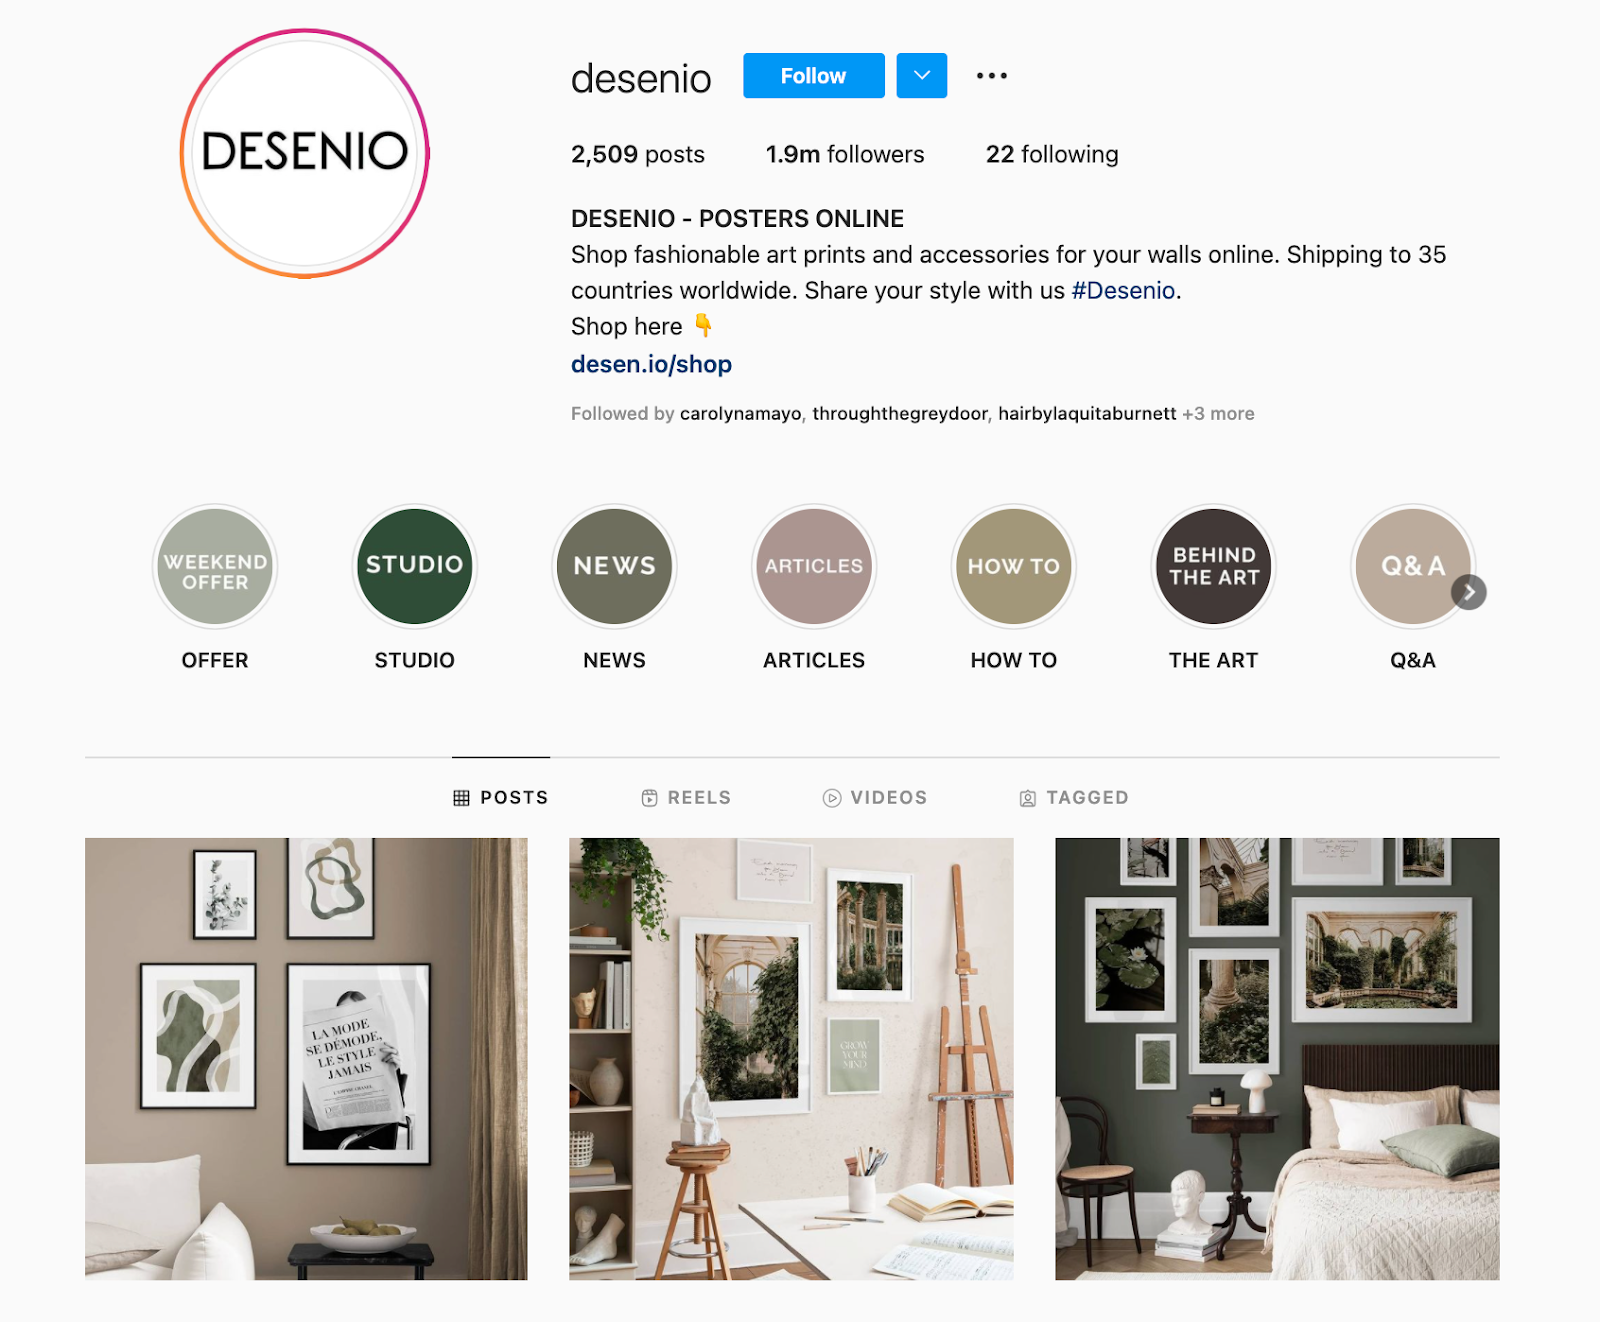 Best Brands on Instagram: Desenio